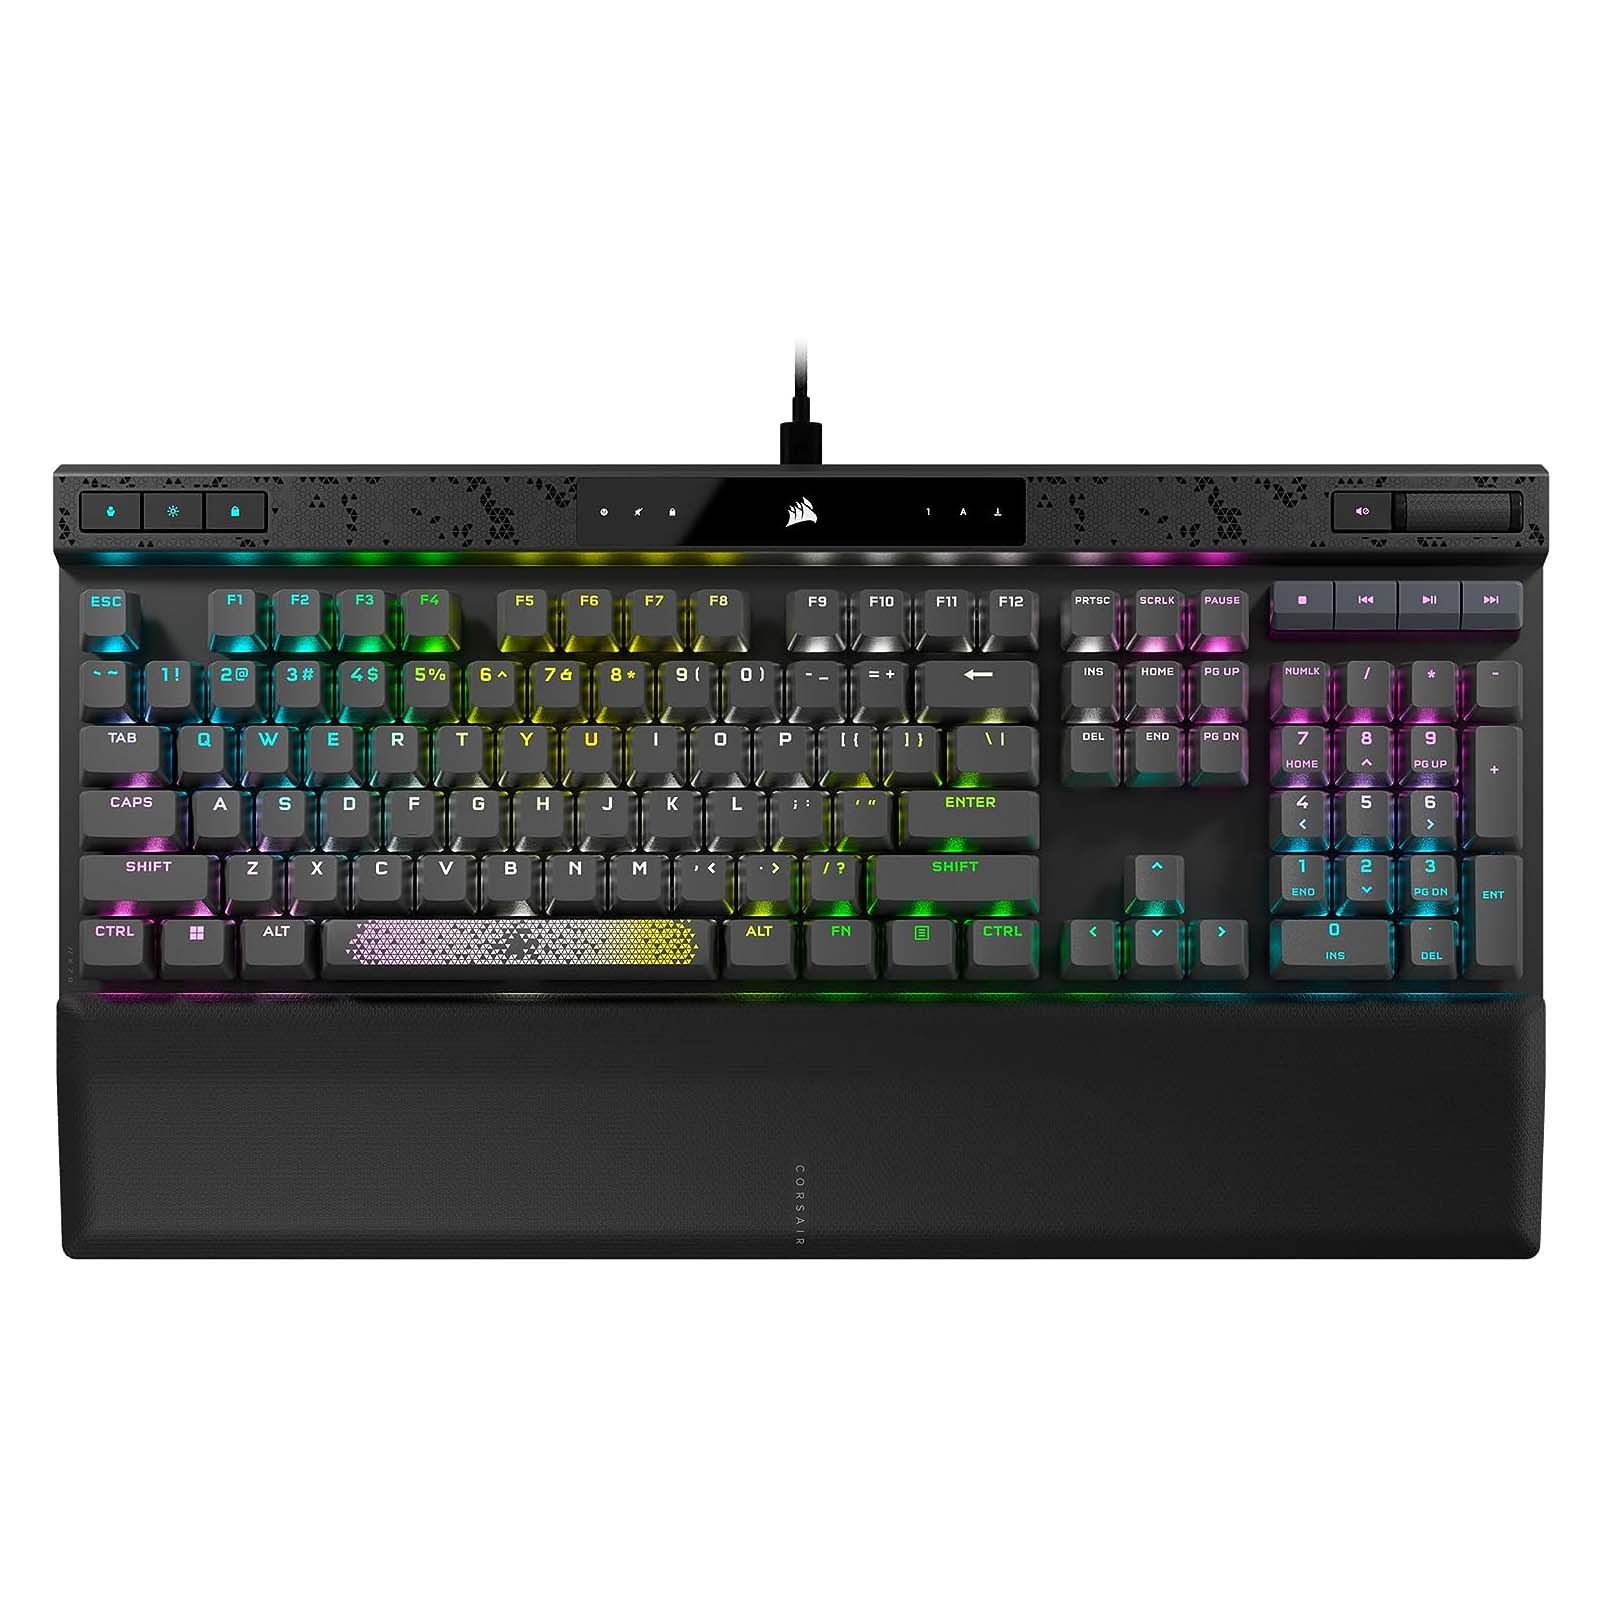 Игровая клавиатура Corsair K70 Max, Corsair MGX, черный, английская раскладка